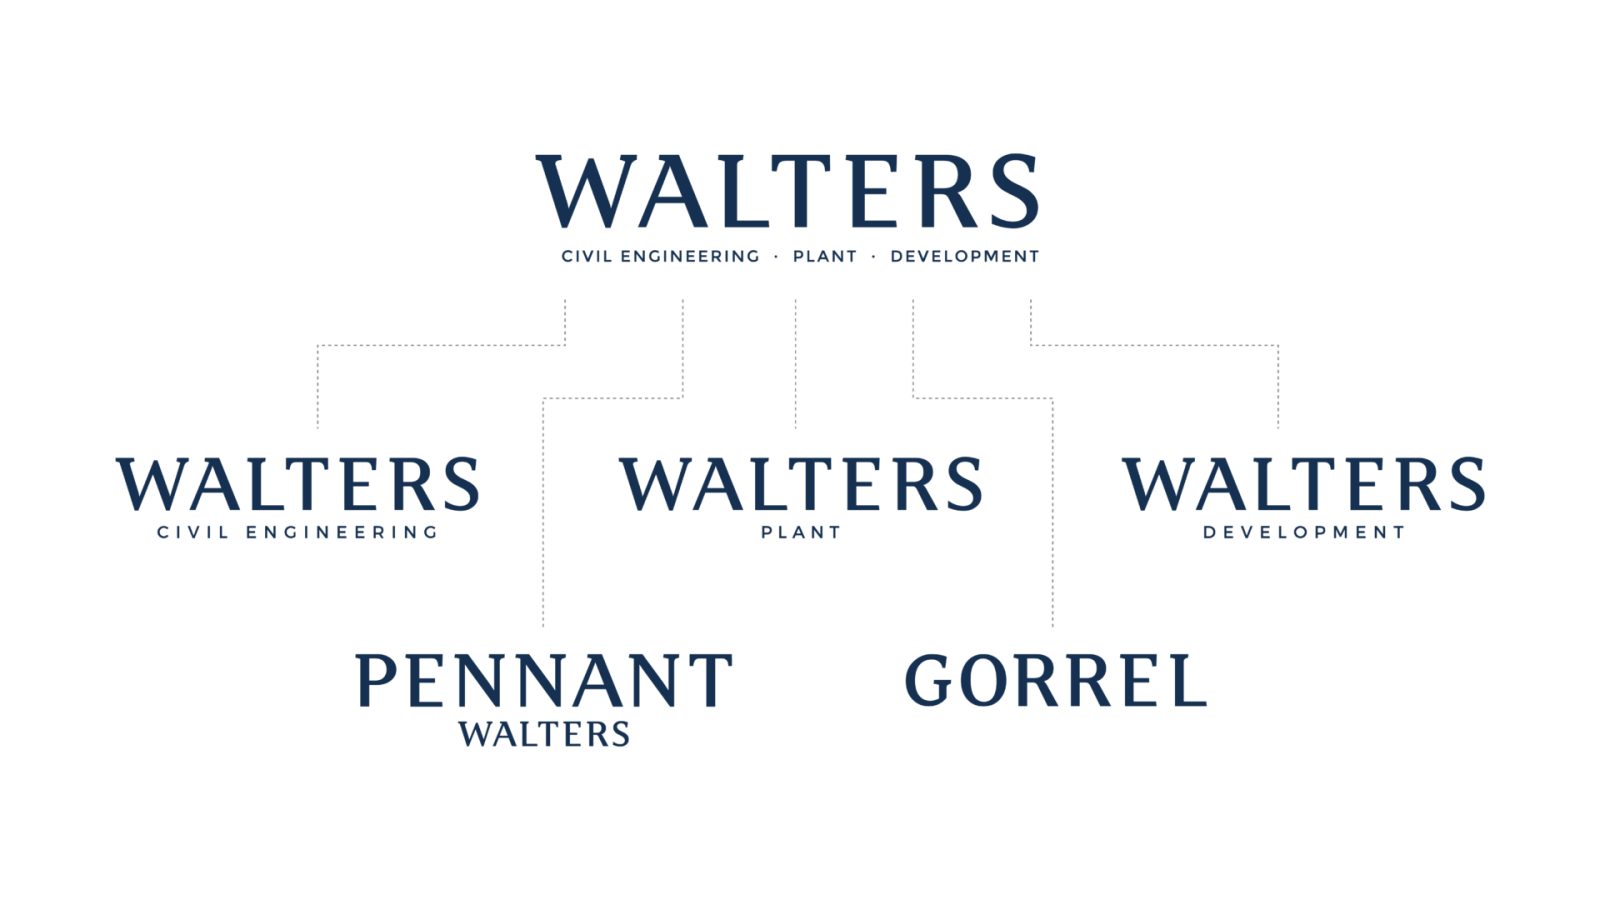 walters-companies-1920x1080